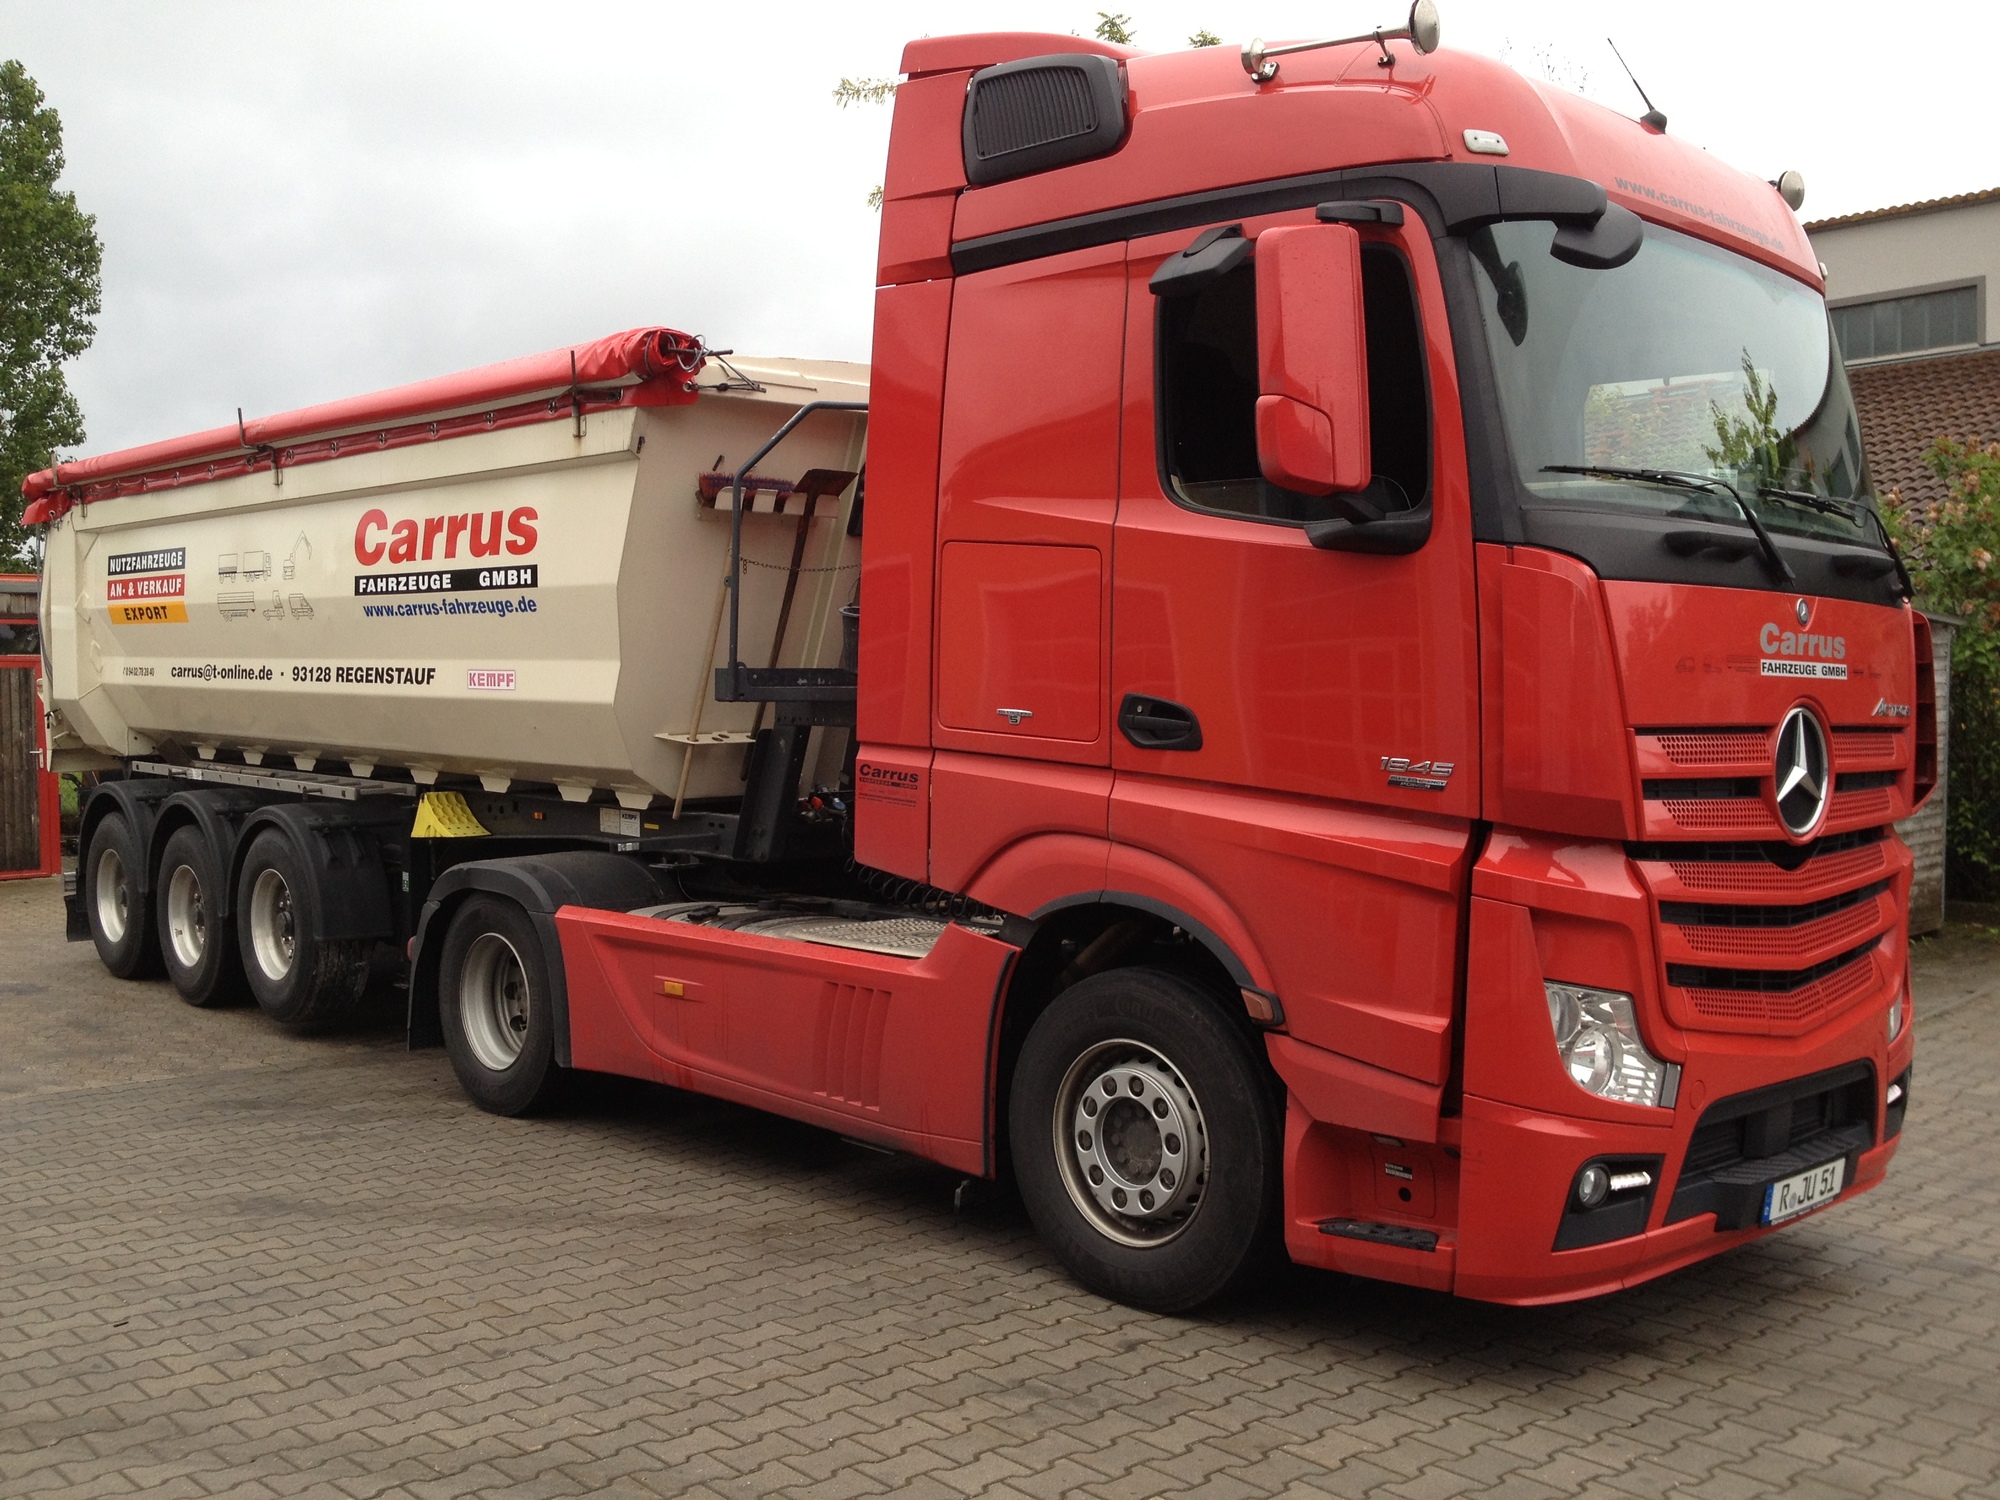 Carrus Fahrzeuge GmbH undefined: photos 4